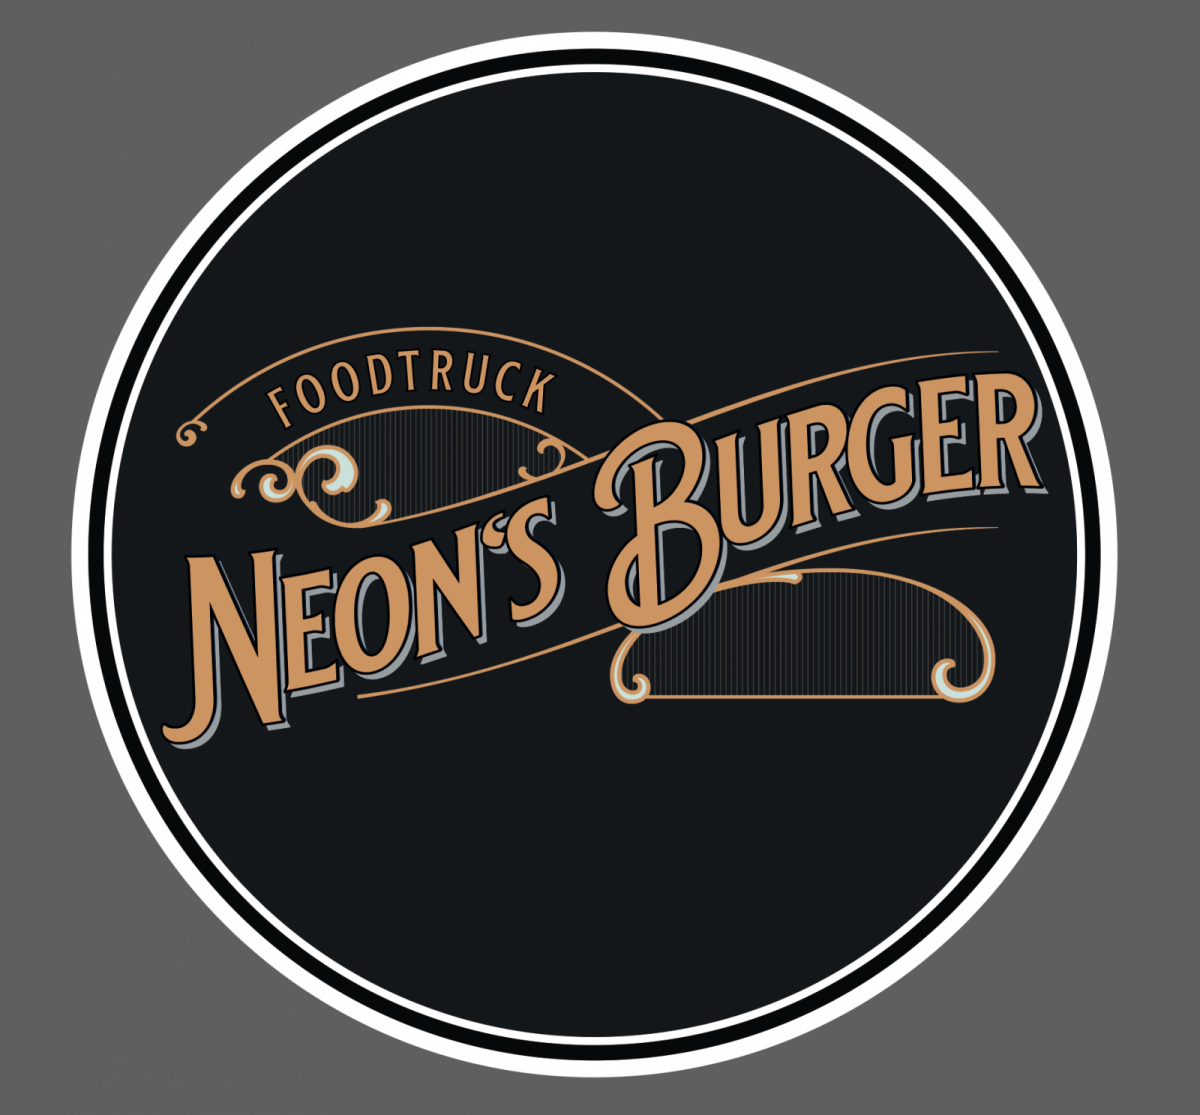 logo neon s burger